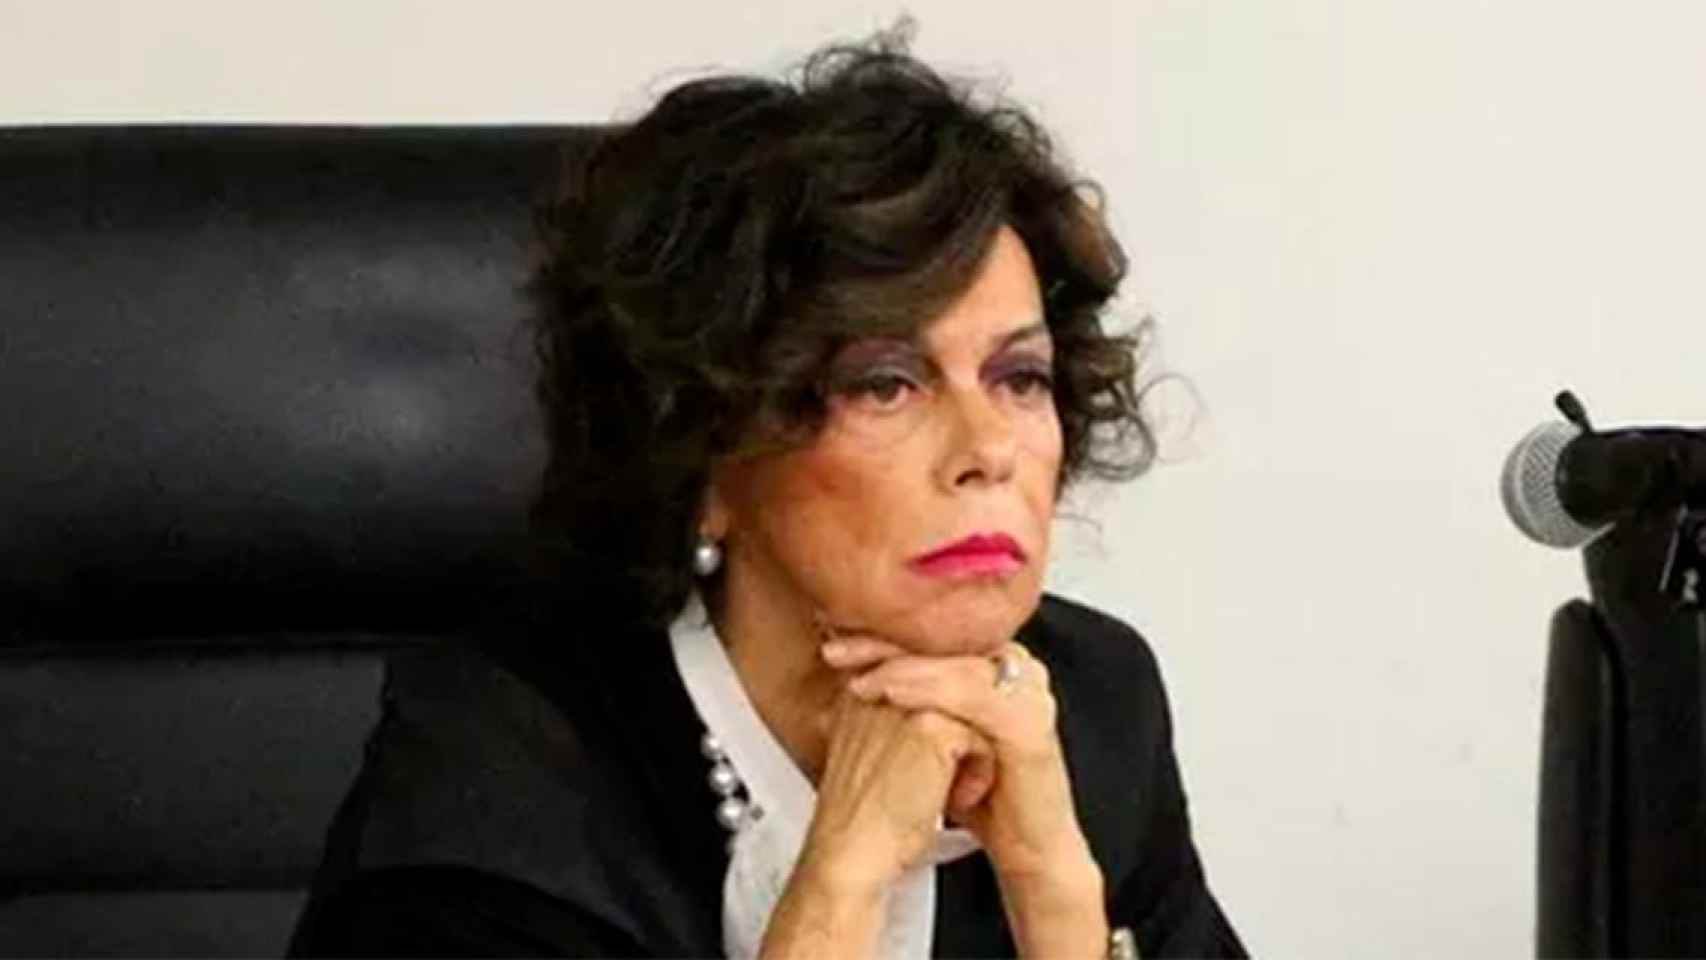 Plinia Azzena, la jueza de la Corte de Apelación de Sassari ante la que declaró el expresidente de Cataluña Carles Puigdemont / LA NUOVA SARDEGNA